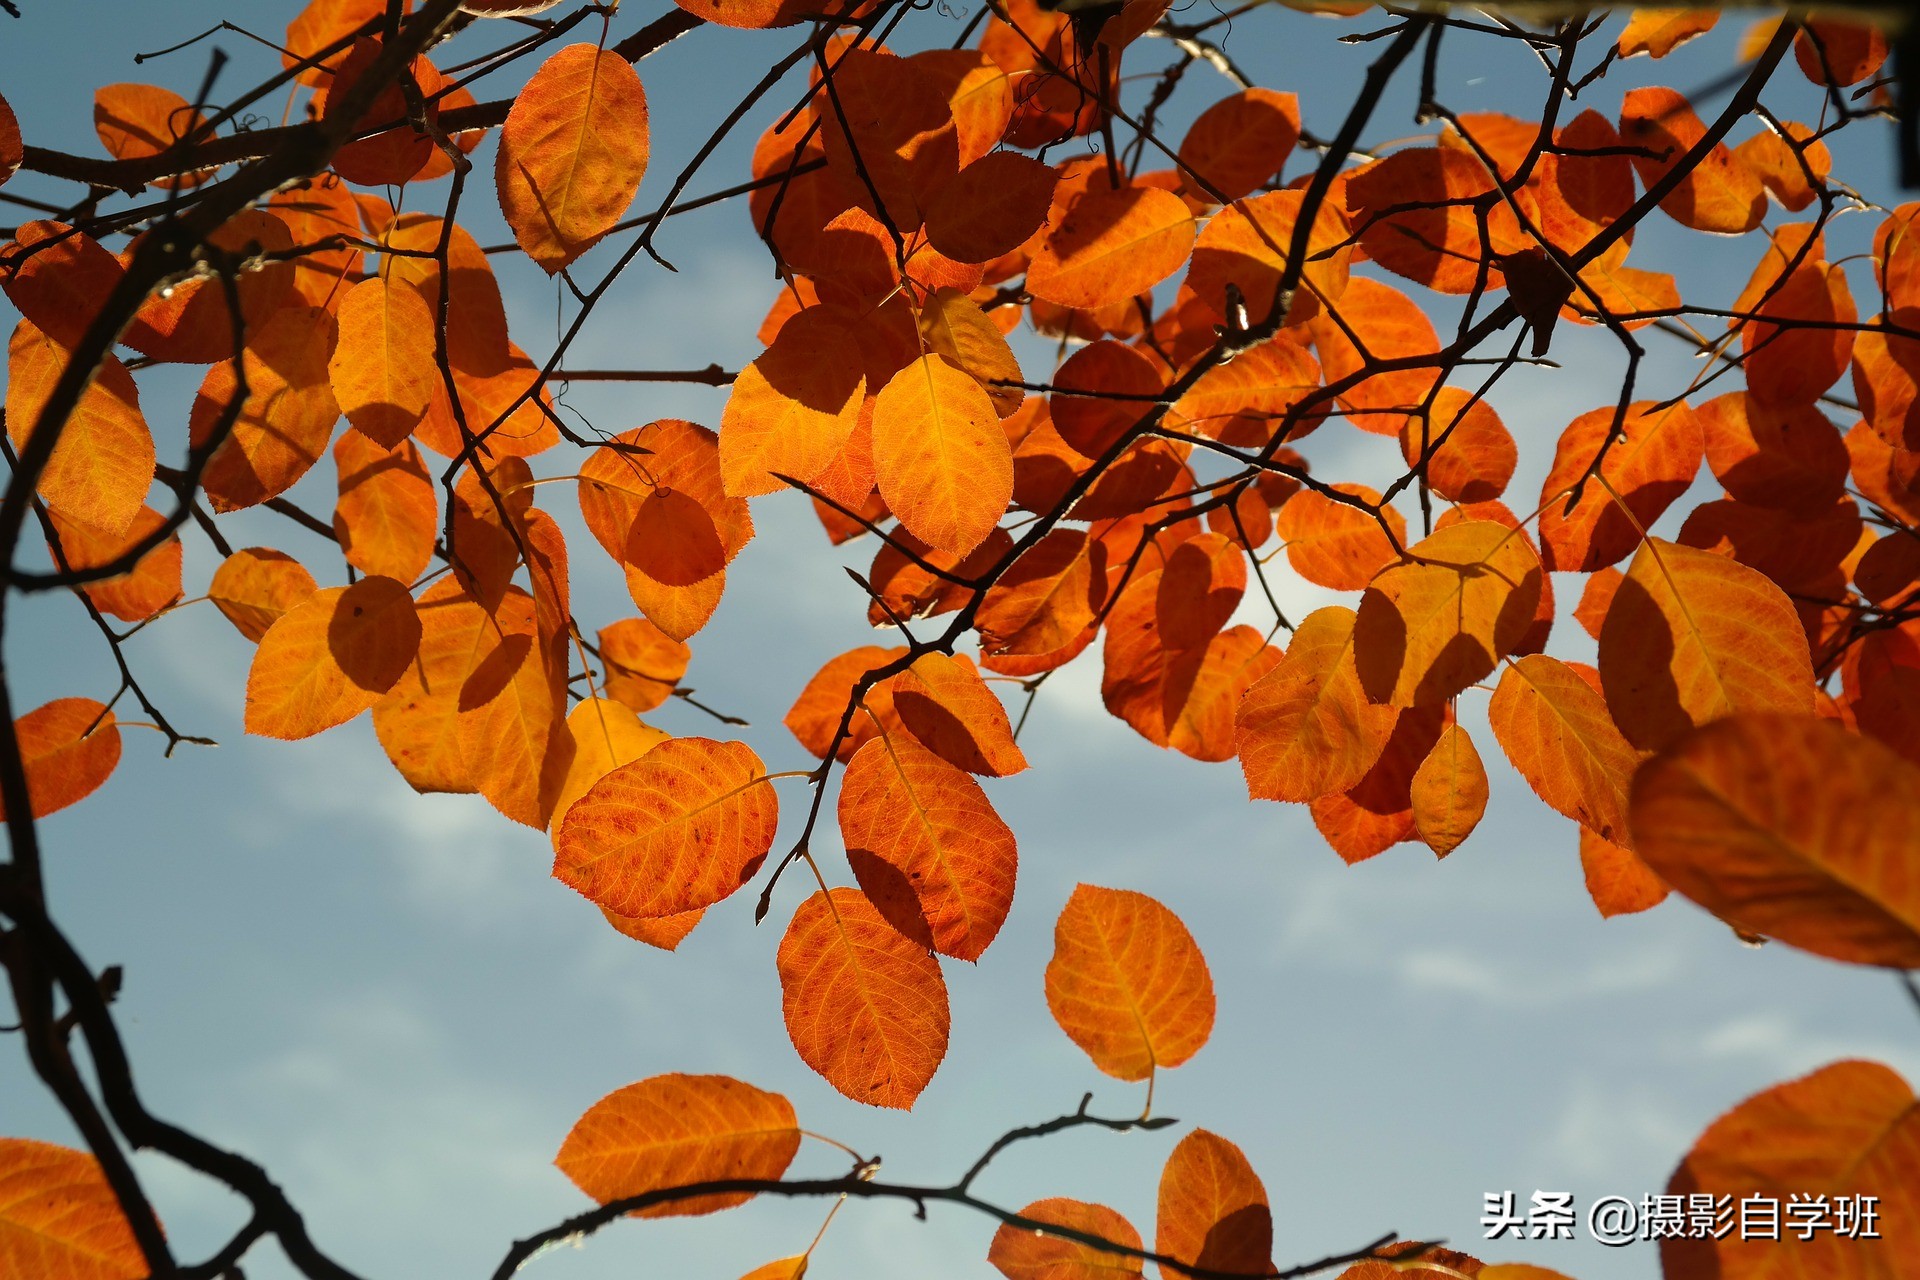 拍美秋天并不难，这6个简单的秋天摄影技巧，帮摄影新手拍美秋天